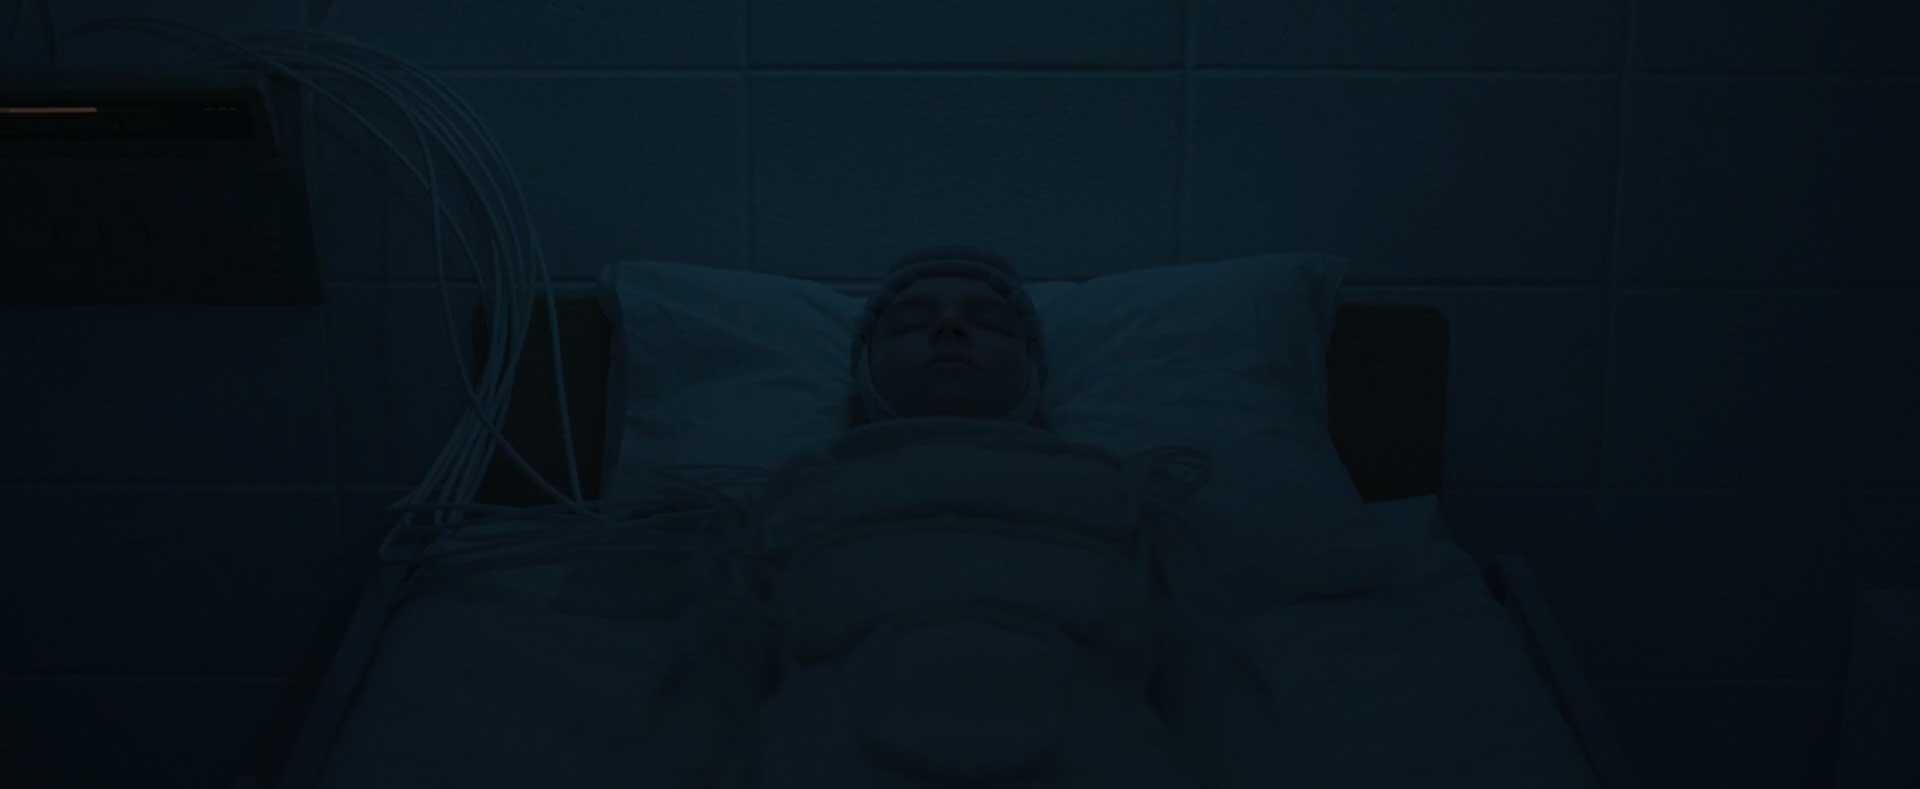 دختر خوابیده روی تخت در محل تست داخل فیلم ترسناک Come True از کشور کانادا